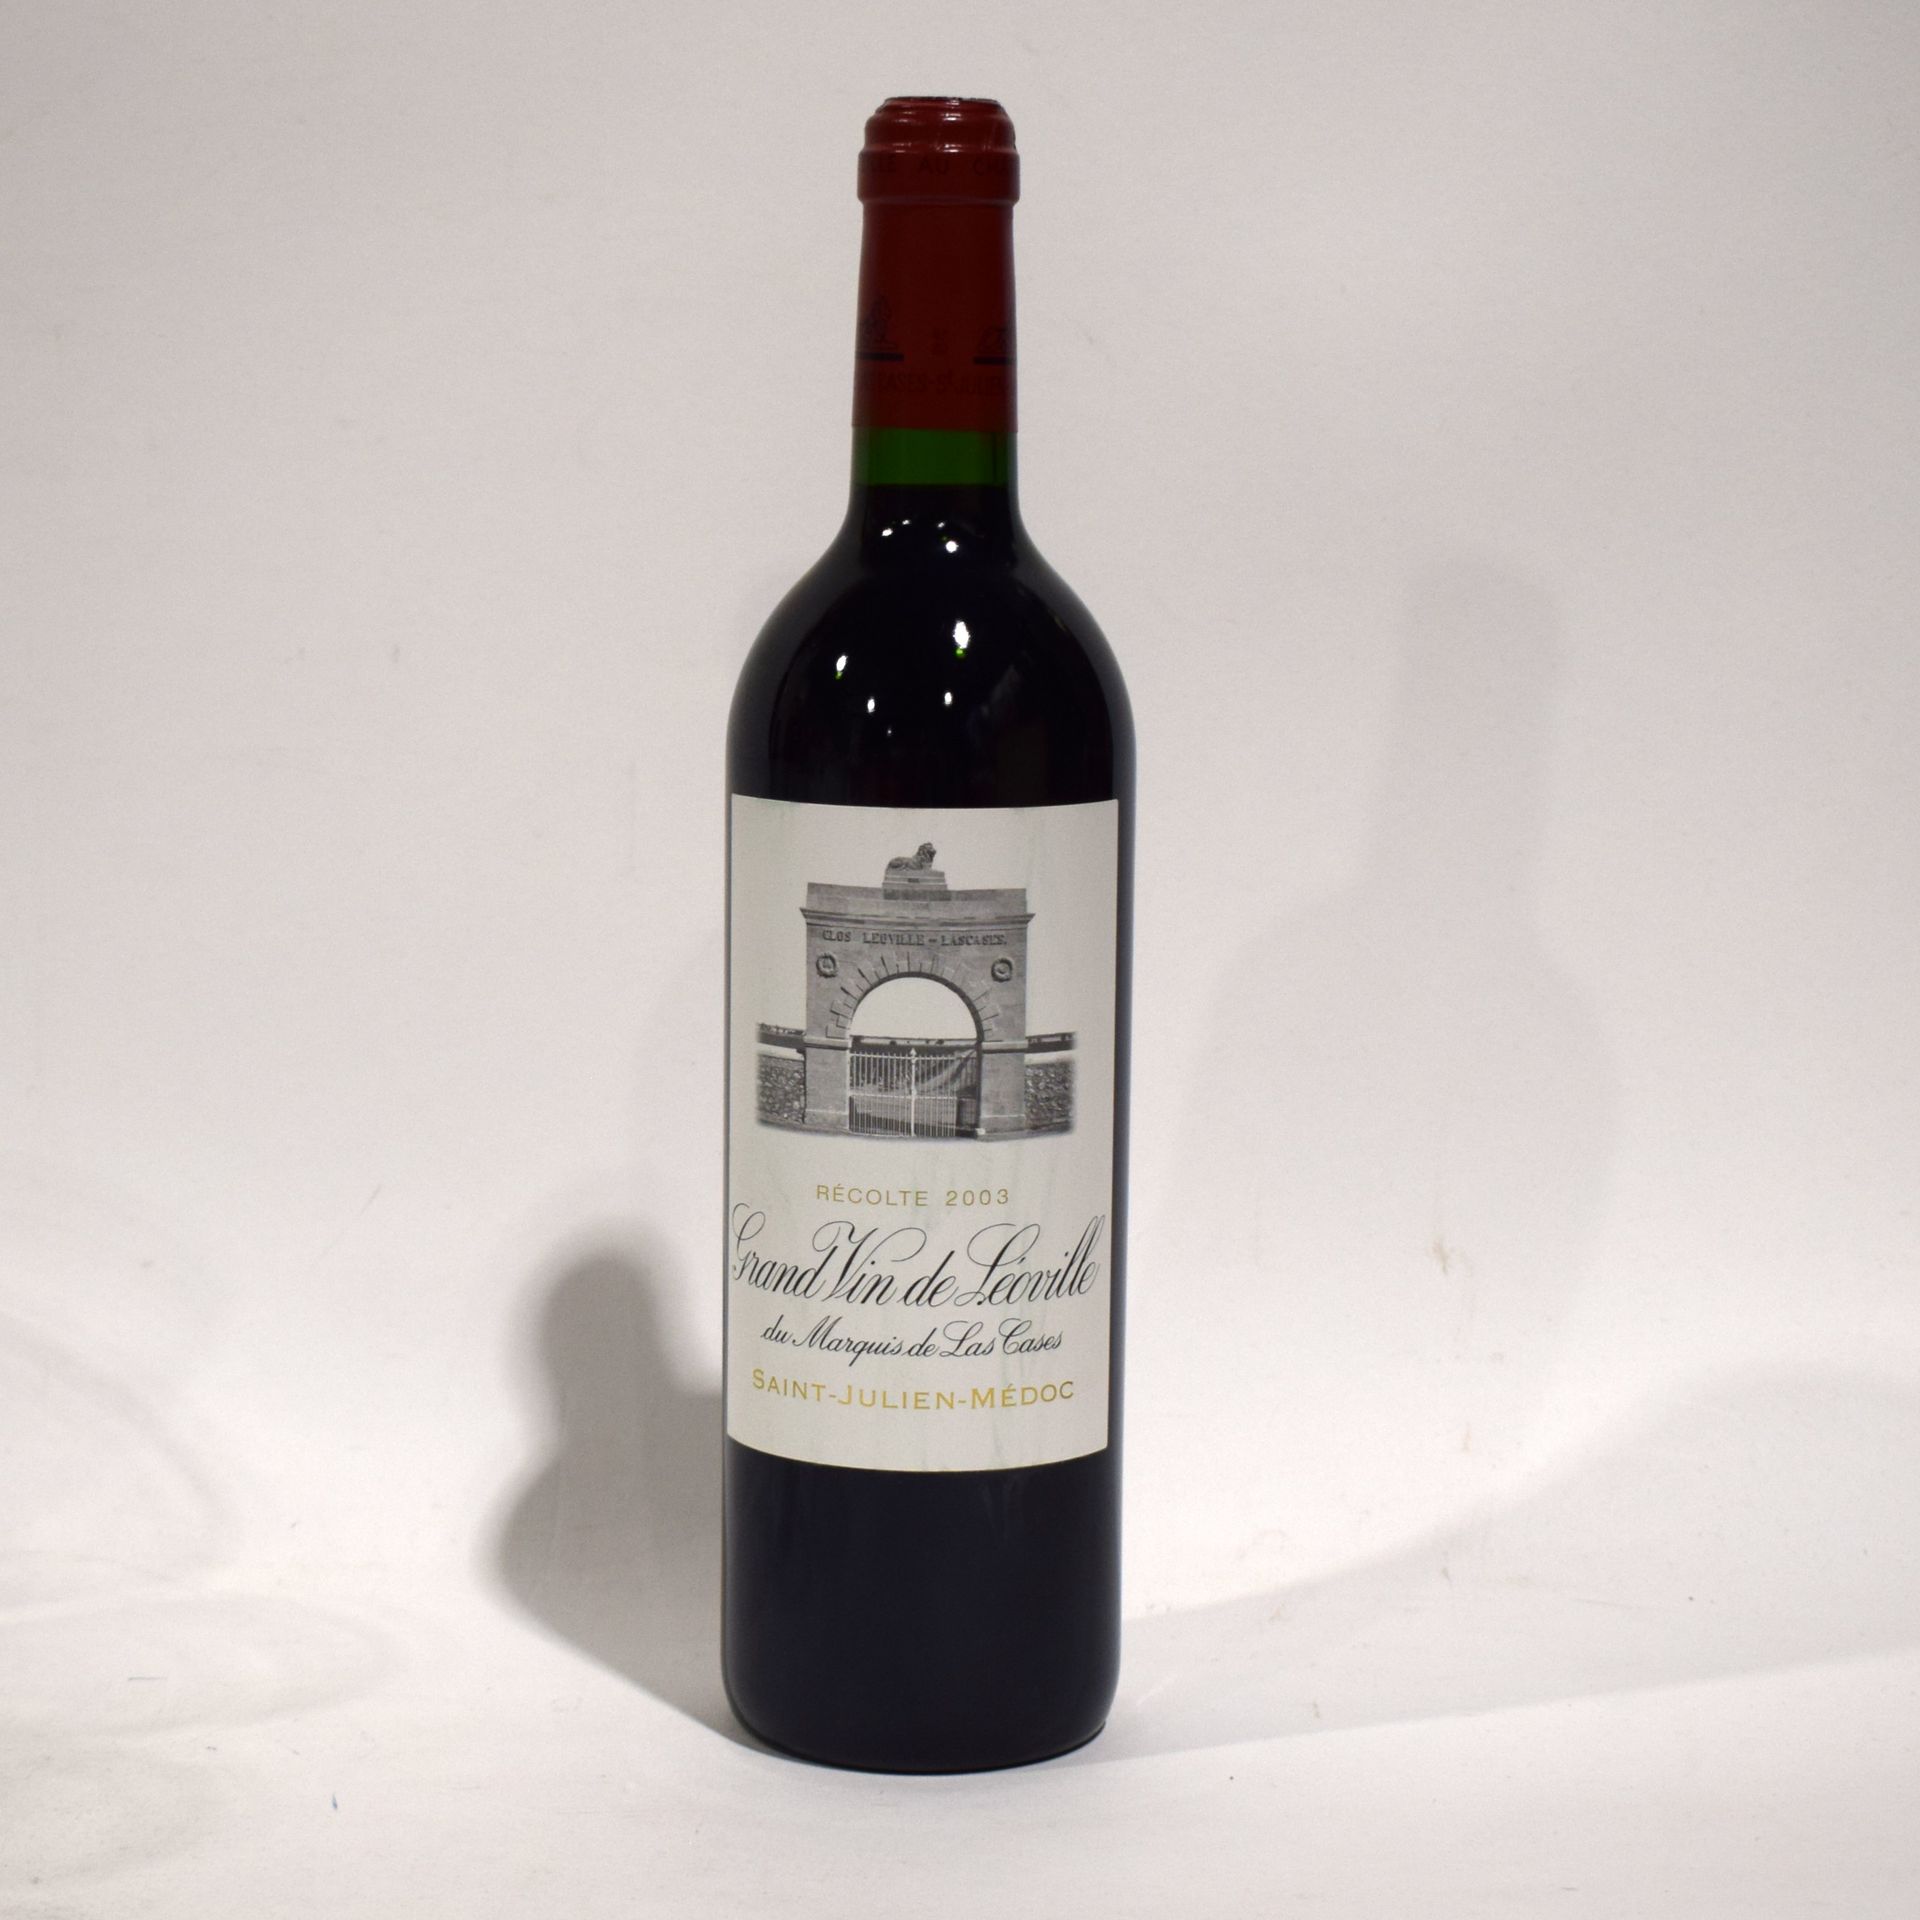 Null (SAINT-JULIEN) Bottle of Grand vin de LÉOVILLE du Marquis de Las Cases, Sai&hellip;